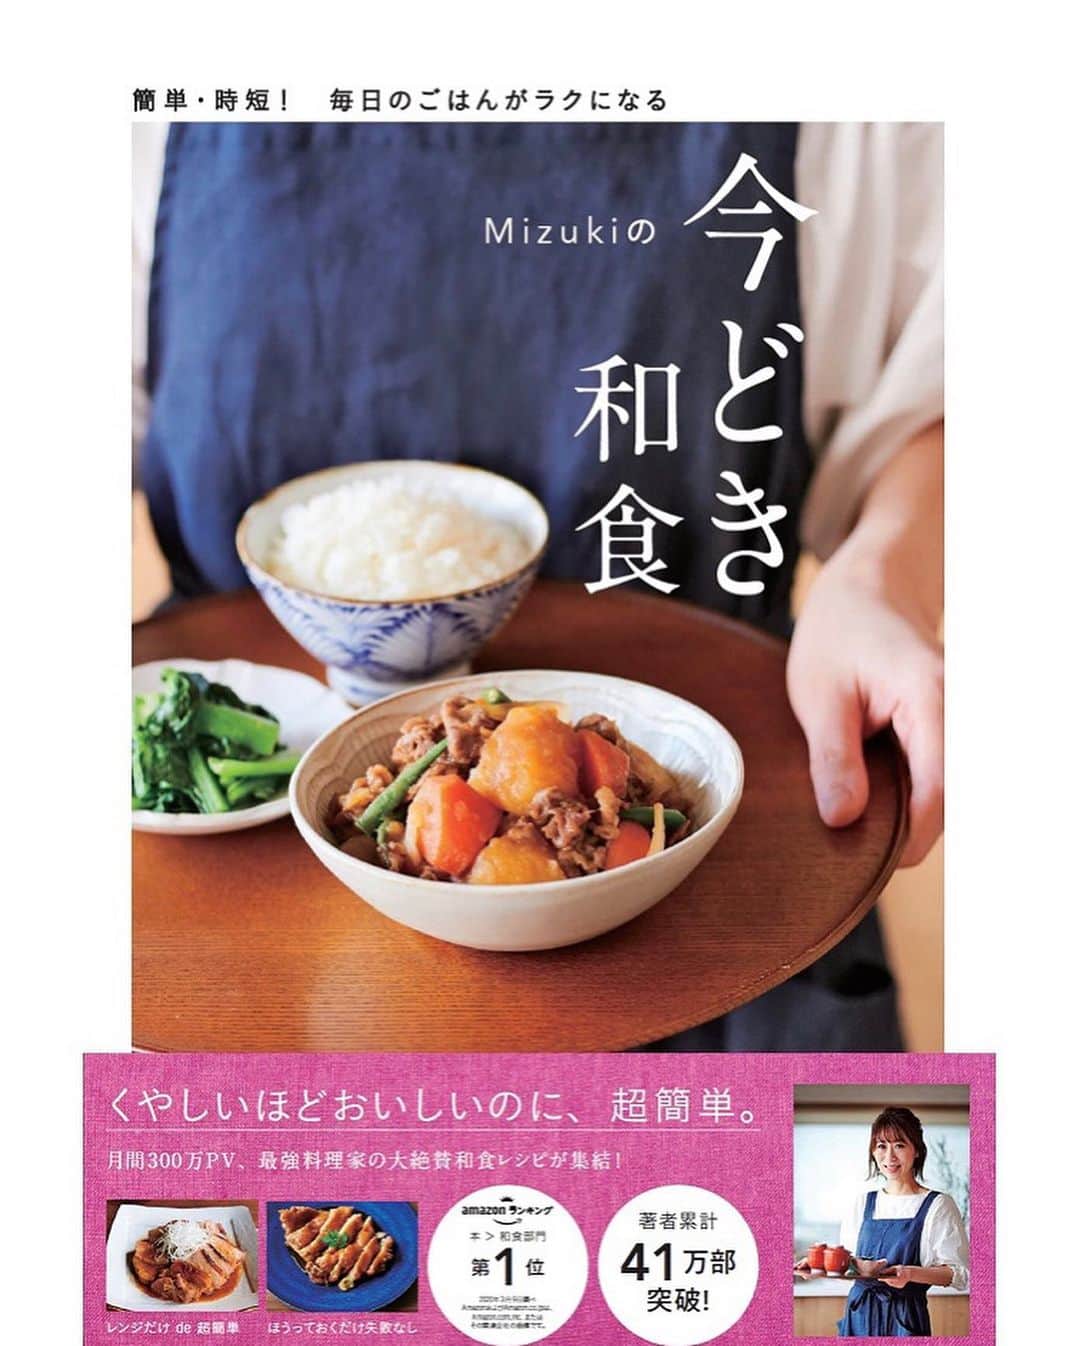 Mizuki【料理ブロガー・簡単レシピ】さんのインスタグラム写真 - (Mizuki【料理ブロガー・簡単レシピ】Instagram)「・﻿ 【#レシピ 】ーーーーーーー﻿ ホットケーキミックスで！﻿ チョコナッツスコーン﻿ ーーーーーーーーーーーーー﻿ ﻿ 　﻿ ﻿ おはようございます(*^^*)﻿ ﻿ 今日はホケミスイーツ☆﻿ バレンタインにもおすすめの﻿ \ チョコナッツスコーン / ﻿ をご紹介させていただきます♩﻿ ﻿ 作り方は超簡単(*´艸`)﻿ バターなし！﻿ 生地はポリ袋で混ぜるだけ！﻿ ﻿ チョコとクルミがザクザク入って﻿ 味も見た目も大満足の仕上がりです♡﻿ 普段のおやつにもおすすめなので﻿ よかったらお試し下さいね(*^^*)﻿ ﻿ ﻿ ﻿ ＿＿＿＿＿＿＿＿＿＿＿＿＿＿＿＿＿＿＿＿﻿ 【6個分】﻿ ホットケーキミックス...150g﻿ 牛乳・サラダ油...各大2﻿ 板チョコ...1枚(50g)﻿ クルミ...30g﻿ ﻿ (準備)チョコとクルミは適当に割る。オーブンを180度に予熱する。﻿ 1.ポリ袋にホットケーキミックス、牛乳、サラダ油を入れ、袋の外から揉む。粉っぽさがなくなったらチョコとクルミ(飾り用に少し残す)も加え、更に揉んでまとめる。﻿ 2.生地を取り出し、手で10cm大の丸形に伸ばして6等分に切る。﻿ 3.クッキングシートを敷いた天板に並べ、残りのチョコとクルミをのせ、予熱したオーブンで15分焼く。﻿ ￣￣￣￣￣￣￣￣￣￣￣￣￣￣￣￣￣￣￣￣﻿ ﻿ ﻿ ﻿ 《ポイント》﻿ ︎ ♦︎ホットケーキミックスの種類により生地がまとまらない場合は、牛乳とサラダ油を少し足して下さい♩﻿ ♦︎私は森永のホットケーキミックスを使用しています♩﻿ ♦︎チョコの種類はお好みで♩﻿ ﻿ ﻿ ﻿ ﻿ ﻿ ﻿ ﻿ ﻿ 🎁#今どき和食 器プレゼントキャンペーン🎁﻿ おかげざで［今どき和食］が10刷増版となりました✨﻿ そこで心ばかりですが感謝の気持ちをお伝えしたく﻿ 《器プレゼントキャンペーンを実施中です♩》﻿ ↓﻿ _________________________________﻿ 【プレゼント内容】﻿ ￣￣￣￣￣￣￣￣￣﻿ 今人気の波佐見焼 大皿1枚﻿ もしくは小皿2枚セットを15名様に﻿ ﻿ 【応募方法】﻿ ￣￣￣￣￣￣￣￣￣﻿ ❶［Mizukiの今どき和食］から﻿ 1品ご自身で作った料理画像、﻿ もしくはカバー(表紙)画像を準備。﻿ ❷［#Mizukiの今どき和食器プレゼント ］﻿ のタグを付けて投稿！﻿ (以上で応募完了です😊　2/14〆切)﻿ _________________________________﻿ ﻿ 　﻿ ﻿ ﻿ ﻿ ﻿ ⭐️発売中⭐️﻿ ＿＿＿＿＿＿＿＿＿＿＿＿＿＿＿＿＿＿﻿ ホケミレシピの決定版♩﻿ \はじめてでも失敗しない/﻿ 📙#ホットケーキミックスのお菓子 📙﻿ ﻿ NHKまる得マガジンテキスト☆﻿ ホットケーキミックスで﻿ 📗絶品おやつ&意外なランチ📗﻿ ﻿ しんどくない献立、考えました♩﻿ \15分でいただきます/﻿ 📕#Mizukiの2品献立 📕﻿ ﻿ 和食をもっとカジュアルに♩﻿ \毎日のごはんがラクになる/﻿ 📘Mizukiの今どき和食 📘﻿ ﻿ 重版しました！﻿ ありがとうございます😭﻿ 📗ラクしておいしい！#1品晩ごはん 📗﻿ ﻿ 摂食障害から料理研究家になるまでを綴った﻿ はじめてのエッセイ本﻿ 📙#普通のおいしいをつくるひと 📙﻿ ￣￣￣￣￣￣￣￣￣￣￣￣￣￣￣￣￣￣￣﻿ ﻿ ﻿ ﻿ ﻿ ﻿ ＿＿＿＿＿＿＿＿＿＿＿＿＿＿＿＿＿＿﻿ レシピを作って下さった際や﻿ レシピ本についてのご投稿には﻿ タグ付け( @mizuki_31cafe )して﻿ お知らせいただけると嬉しいです😊💕﻿ ￣￣￣￣￣￣￣￣￣￣￣￣￣￣￣￣￣￣﻿ ﻿ ﻿ ﻿ ﻿ ﻿ #ホットケーキミックス#スコーン#バレンタイン#Mizuki#簡単レシピ#時短レシピ#節約レシピ#料理#フーディーテーブル#マカロニメイト#おうちごはん#デリスタグラマー#料理好きな人と繋がりたい#おうちごはんlover#写真好きな人と繋がりたい#foodpic#cooking#recipe#lin_stagrammer#foodporn#yummy#f52grams#チョコナッツスコーンm」2月7日 7時33分 - mizuki_31cafe